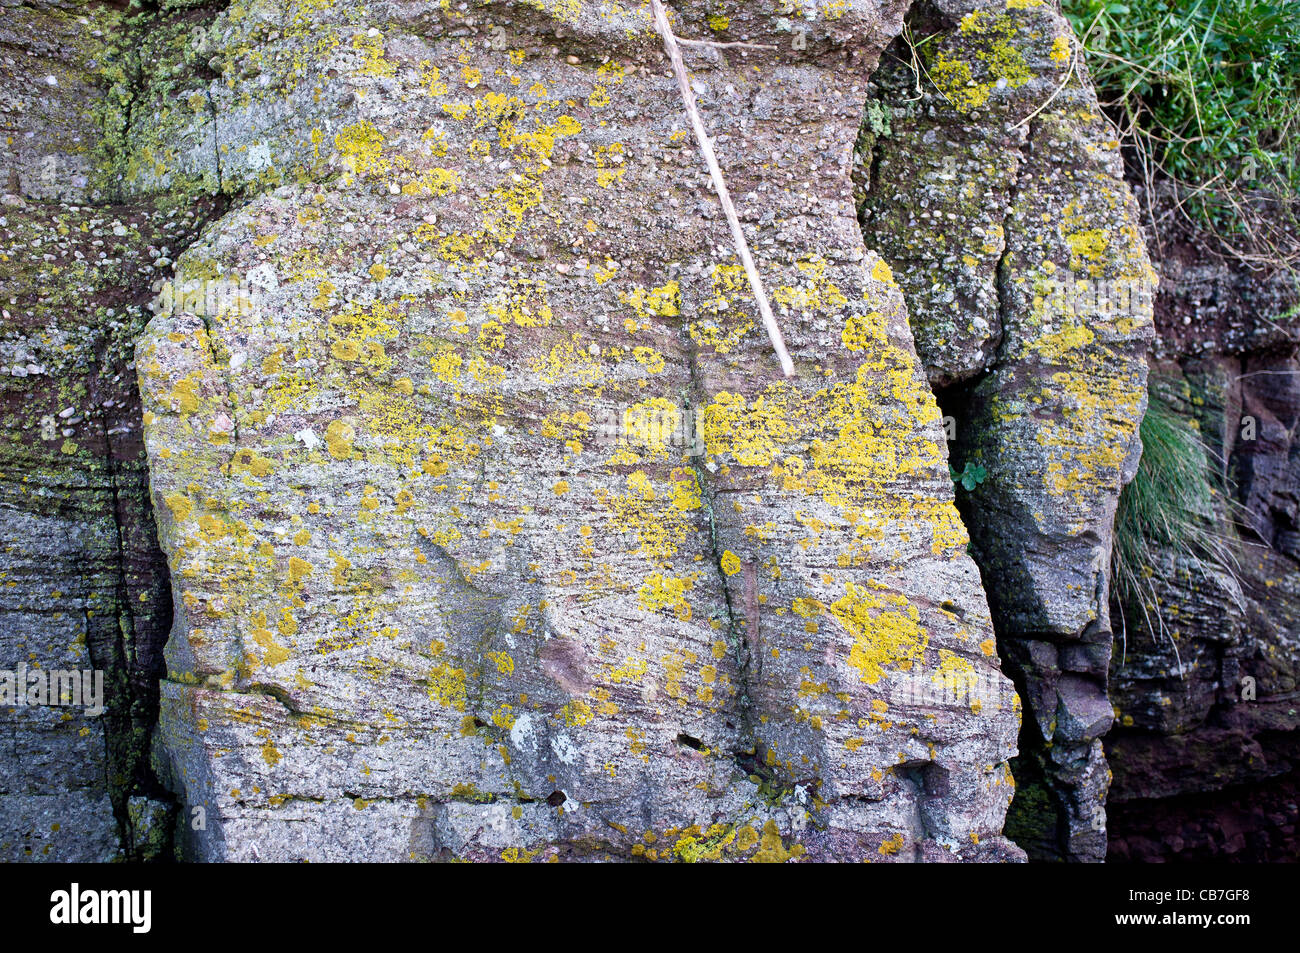 Cross bedding in the Old Red Sandstones of Portishead Cliff (Kilkenny Bay) Stock Photo